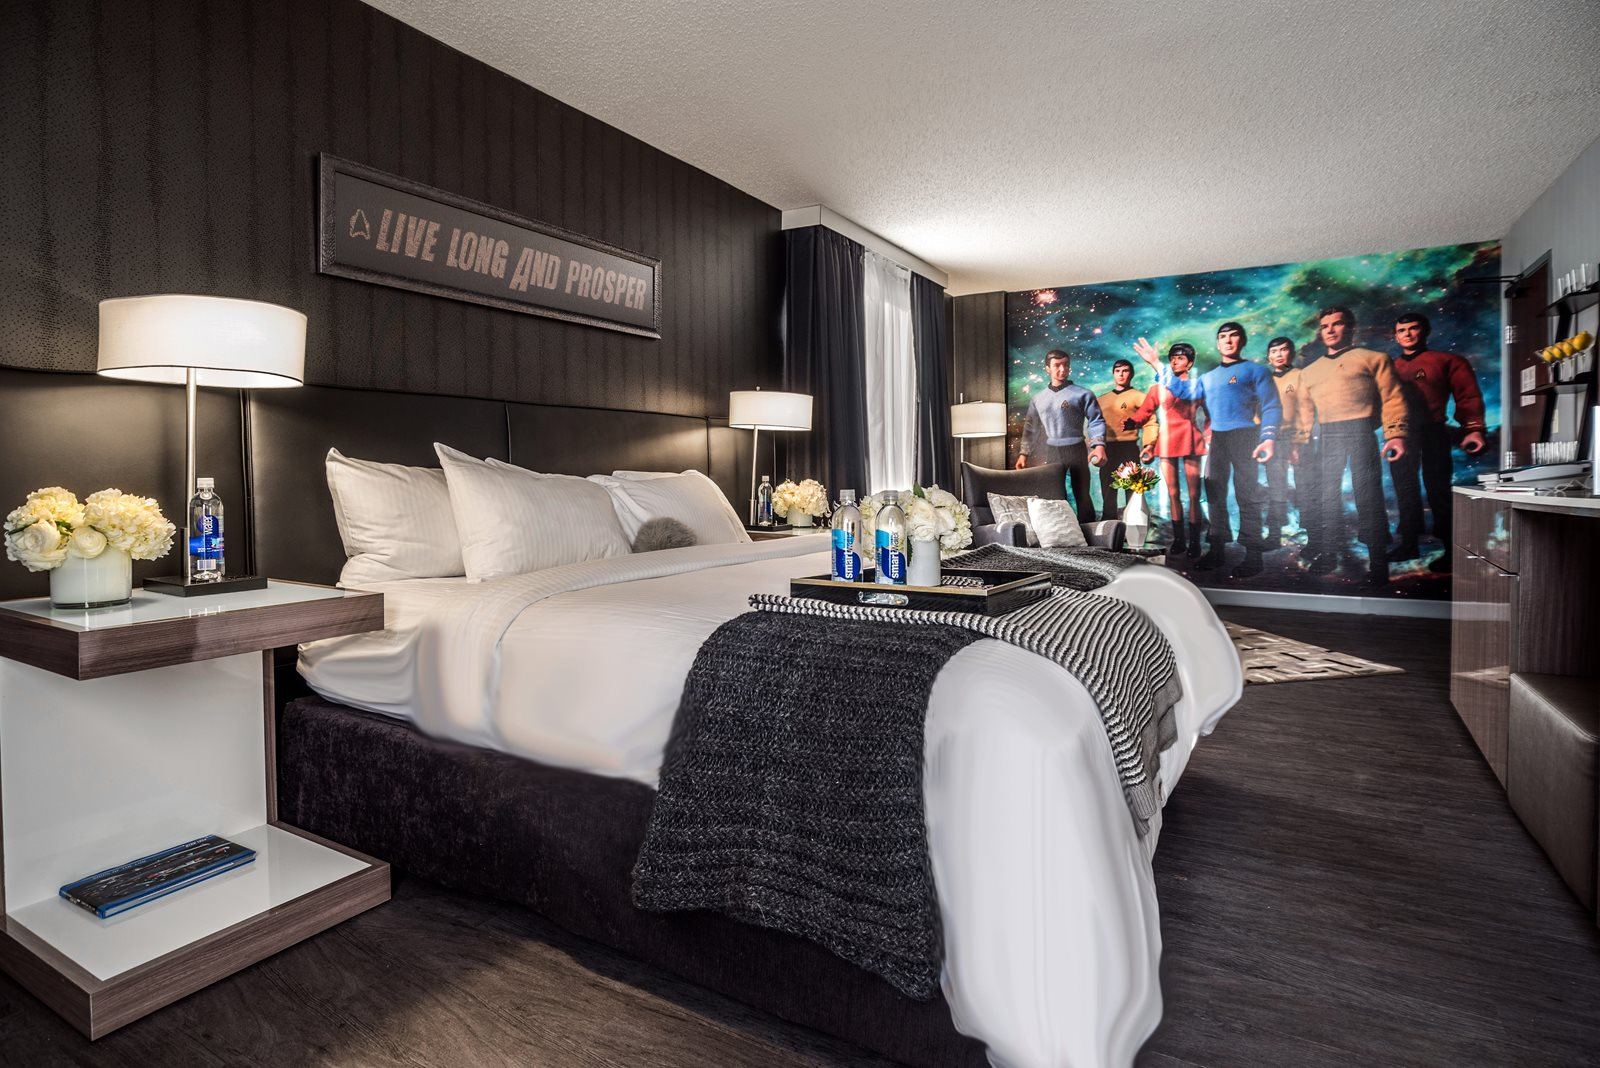 Star Trek room curtis hotel